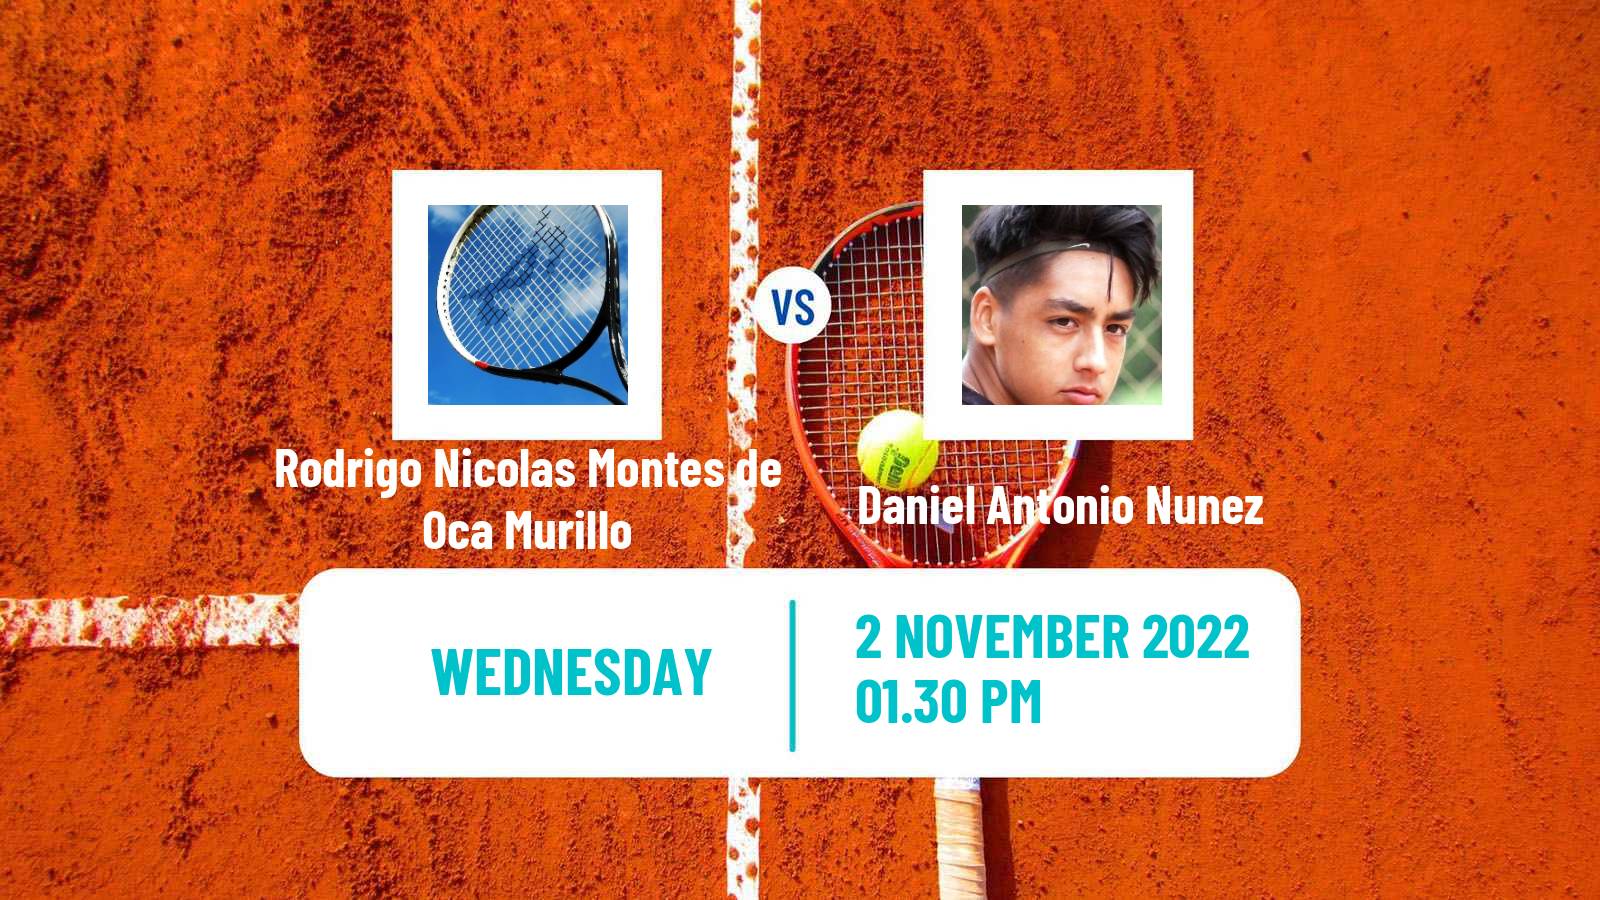 Tennis ITF Tournaments Rodrigo Nicolas Montes de Oca Murillo - Daniel Antonio Nunez